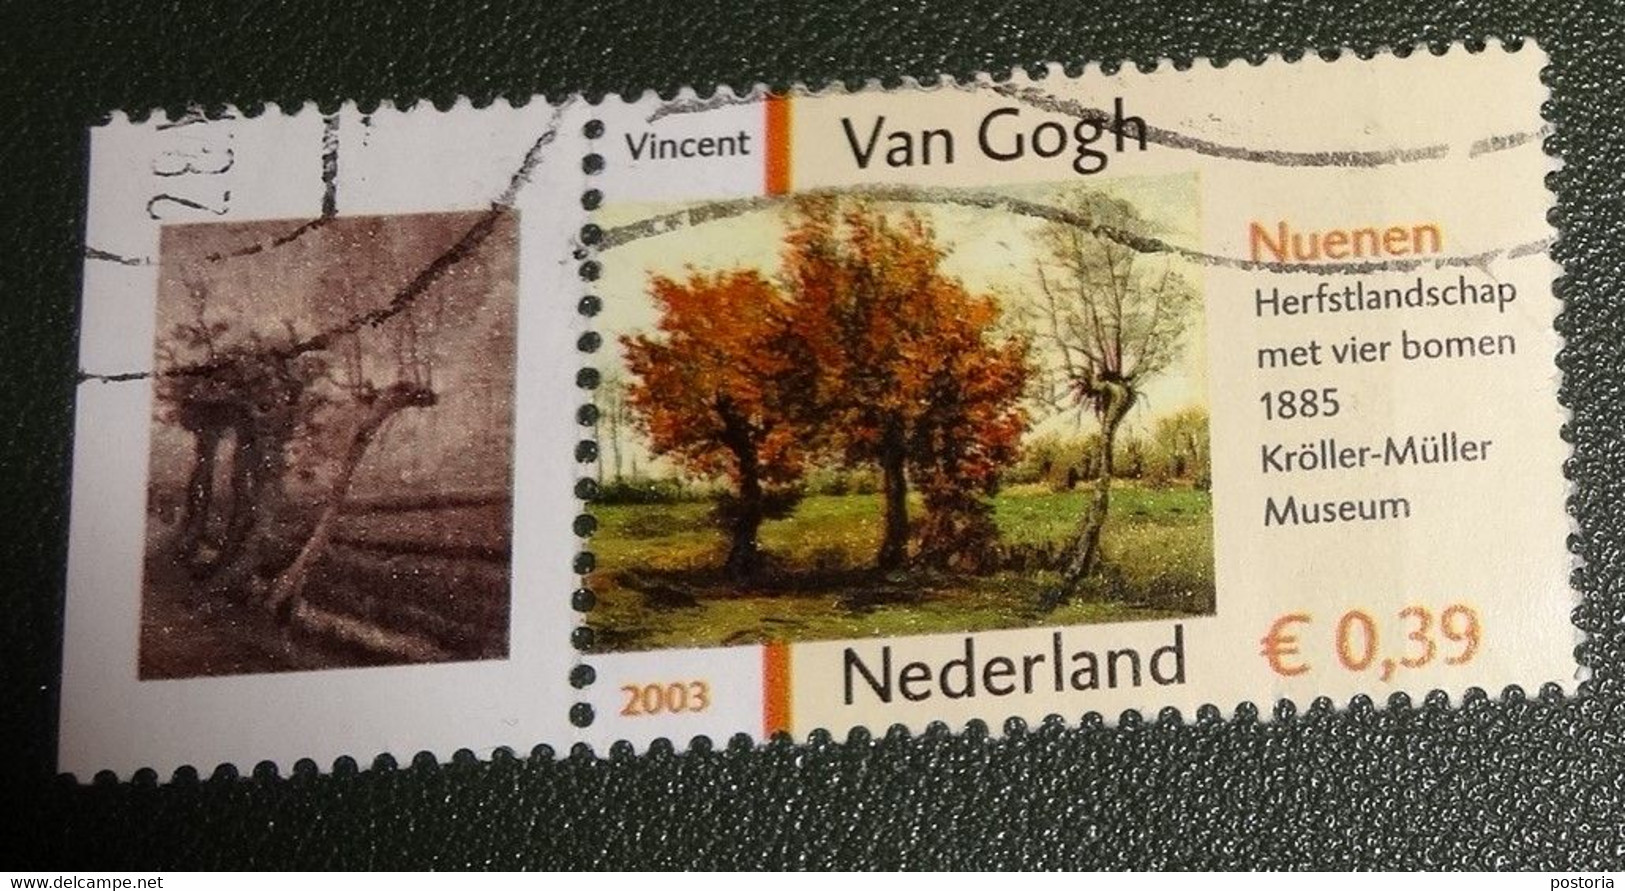 Nederland - NVPH - 2142 - 2003 - Gebruikt - Cancelled - Vincent Van Gogh - Herfstlandschap - Nuenen - Met Tab - Usati